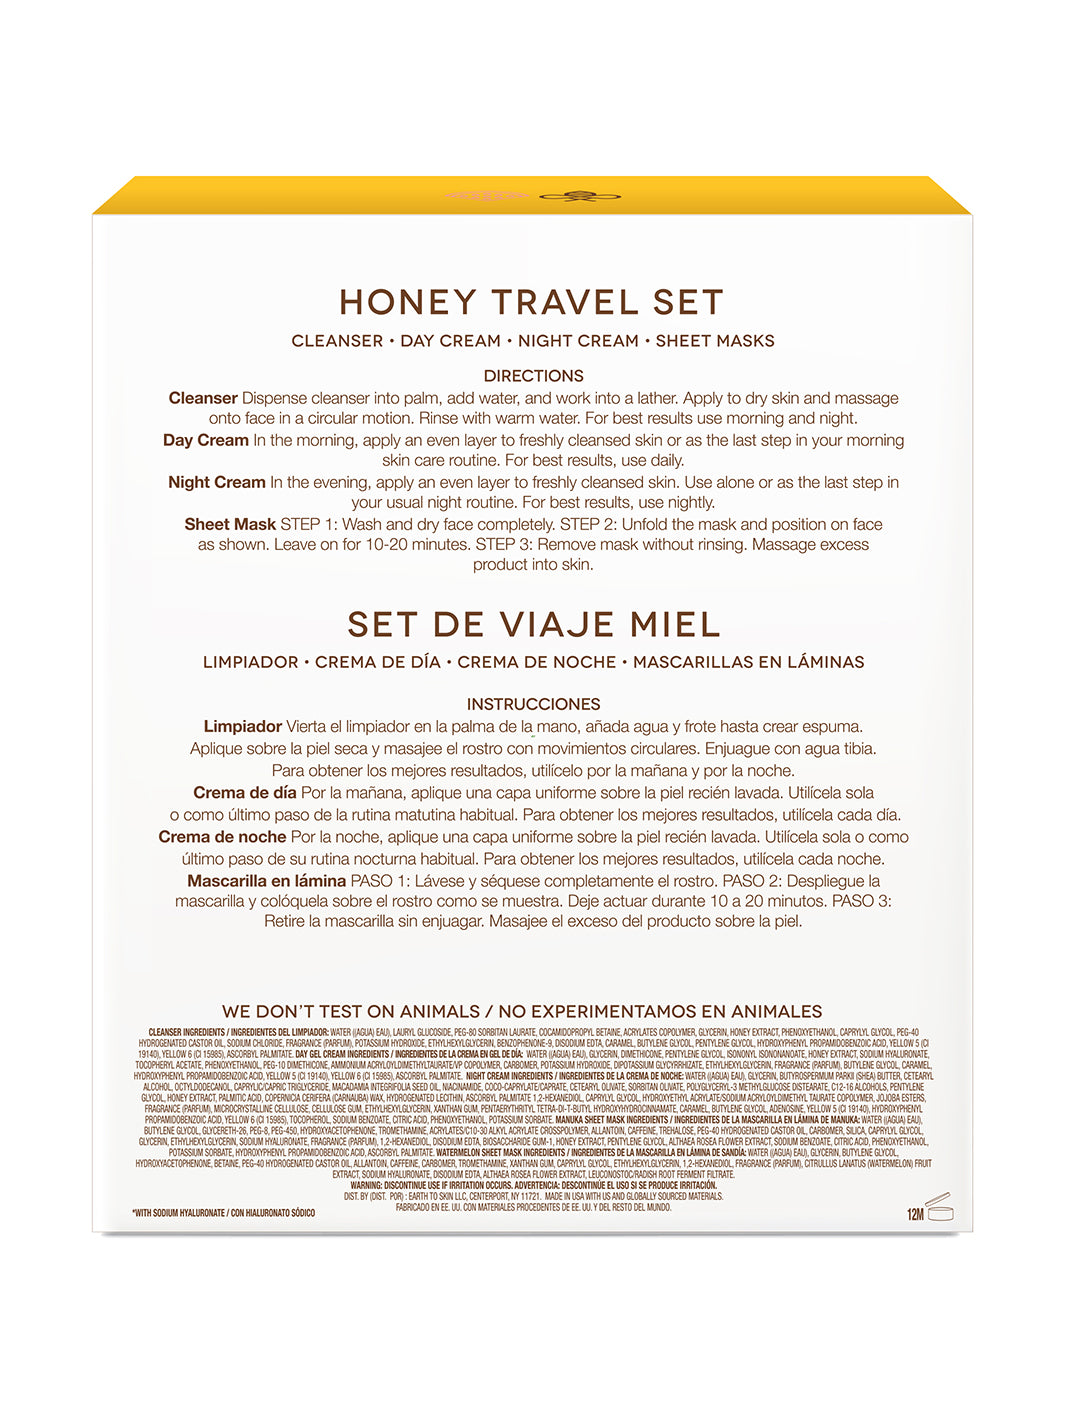 Honey Travel Set